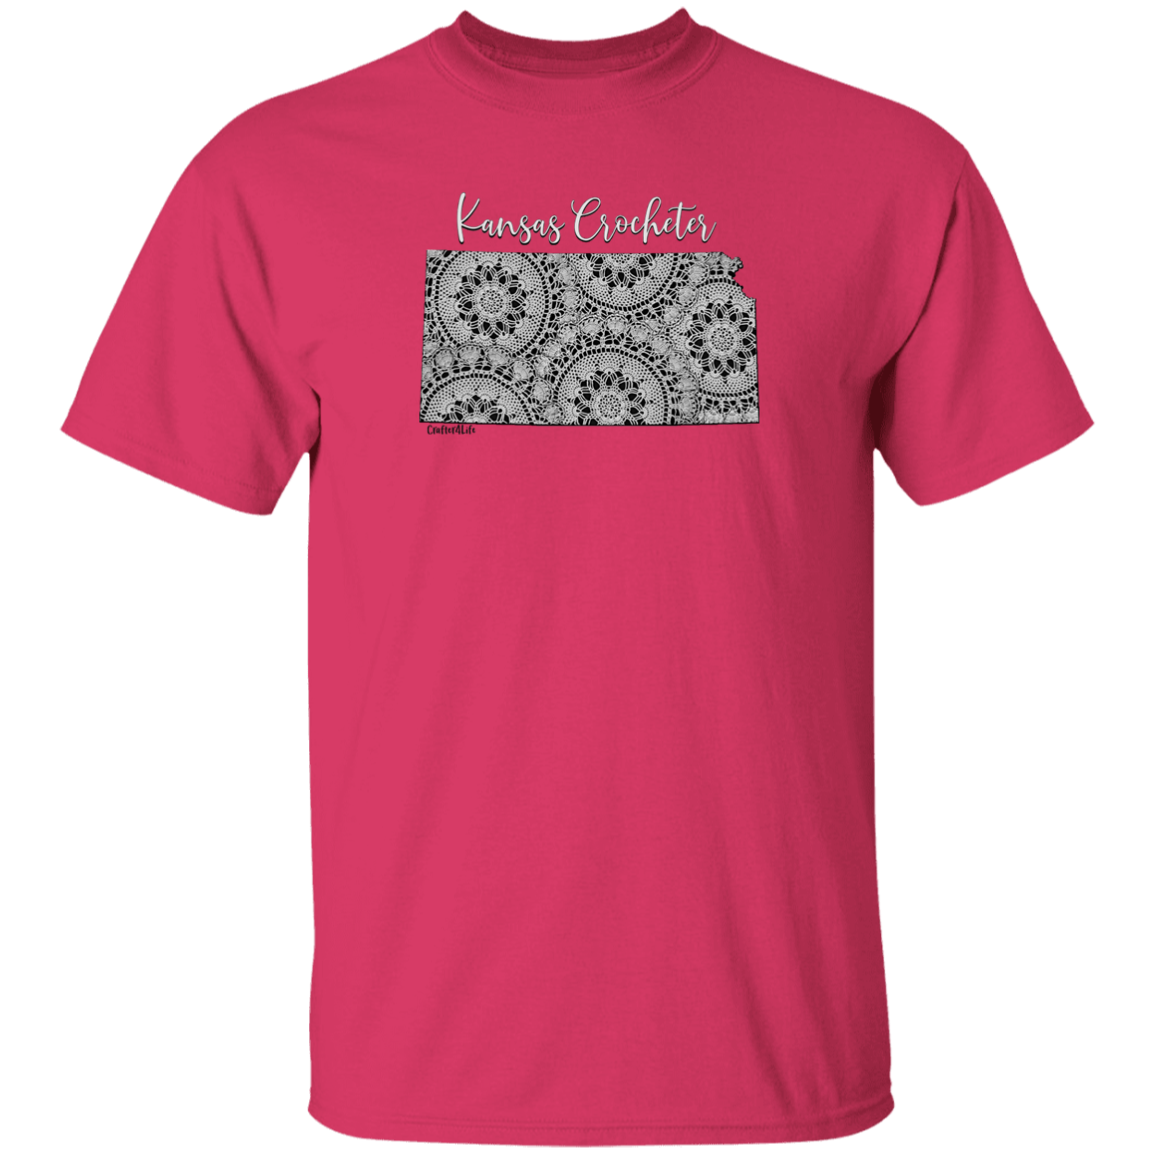 Kansas Crocheter T-Shirt